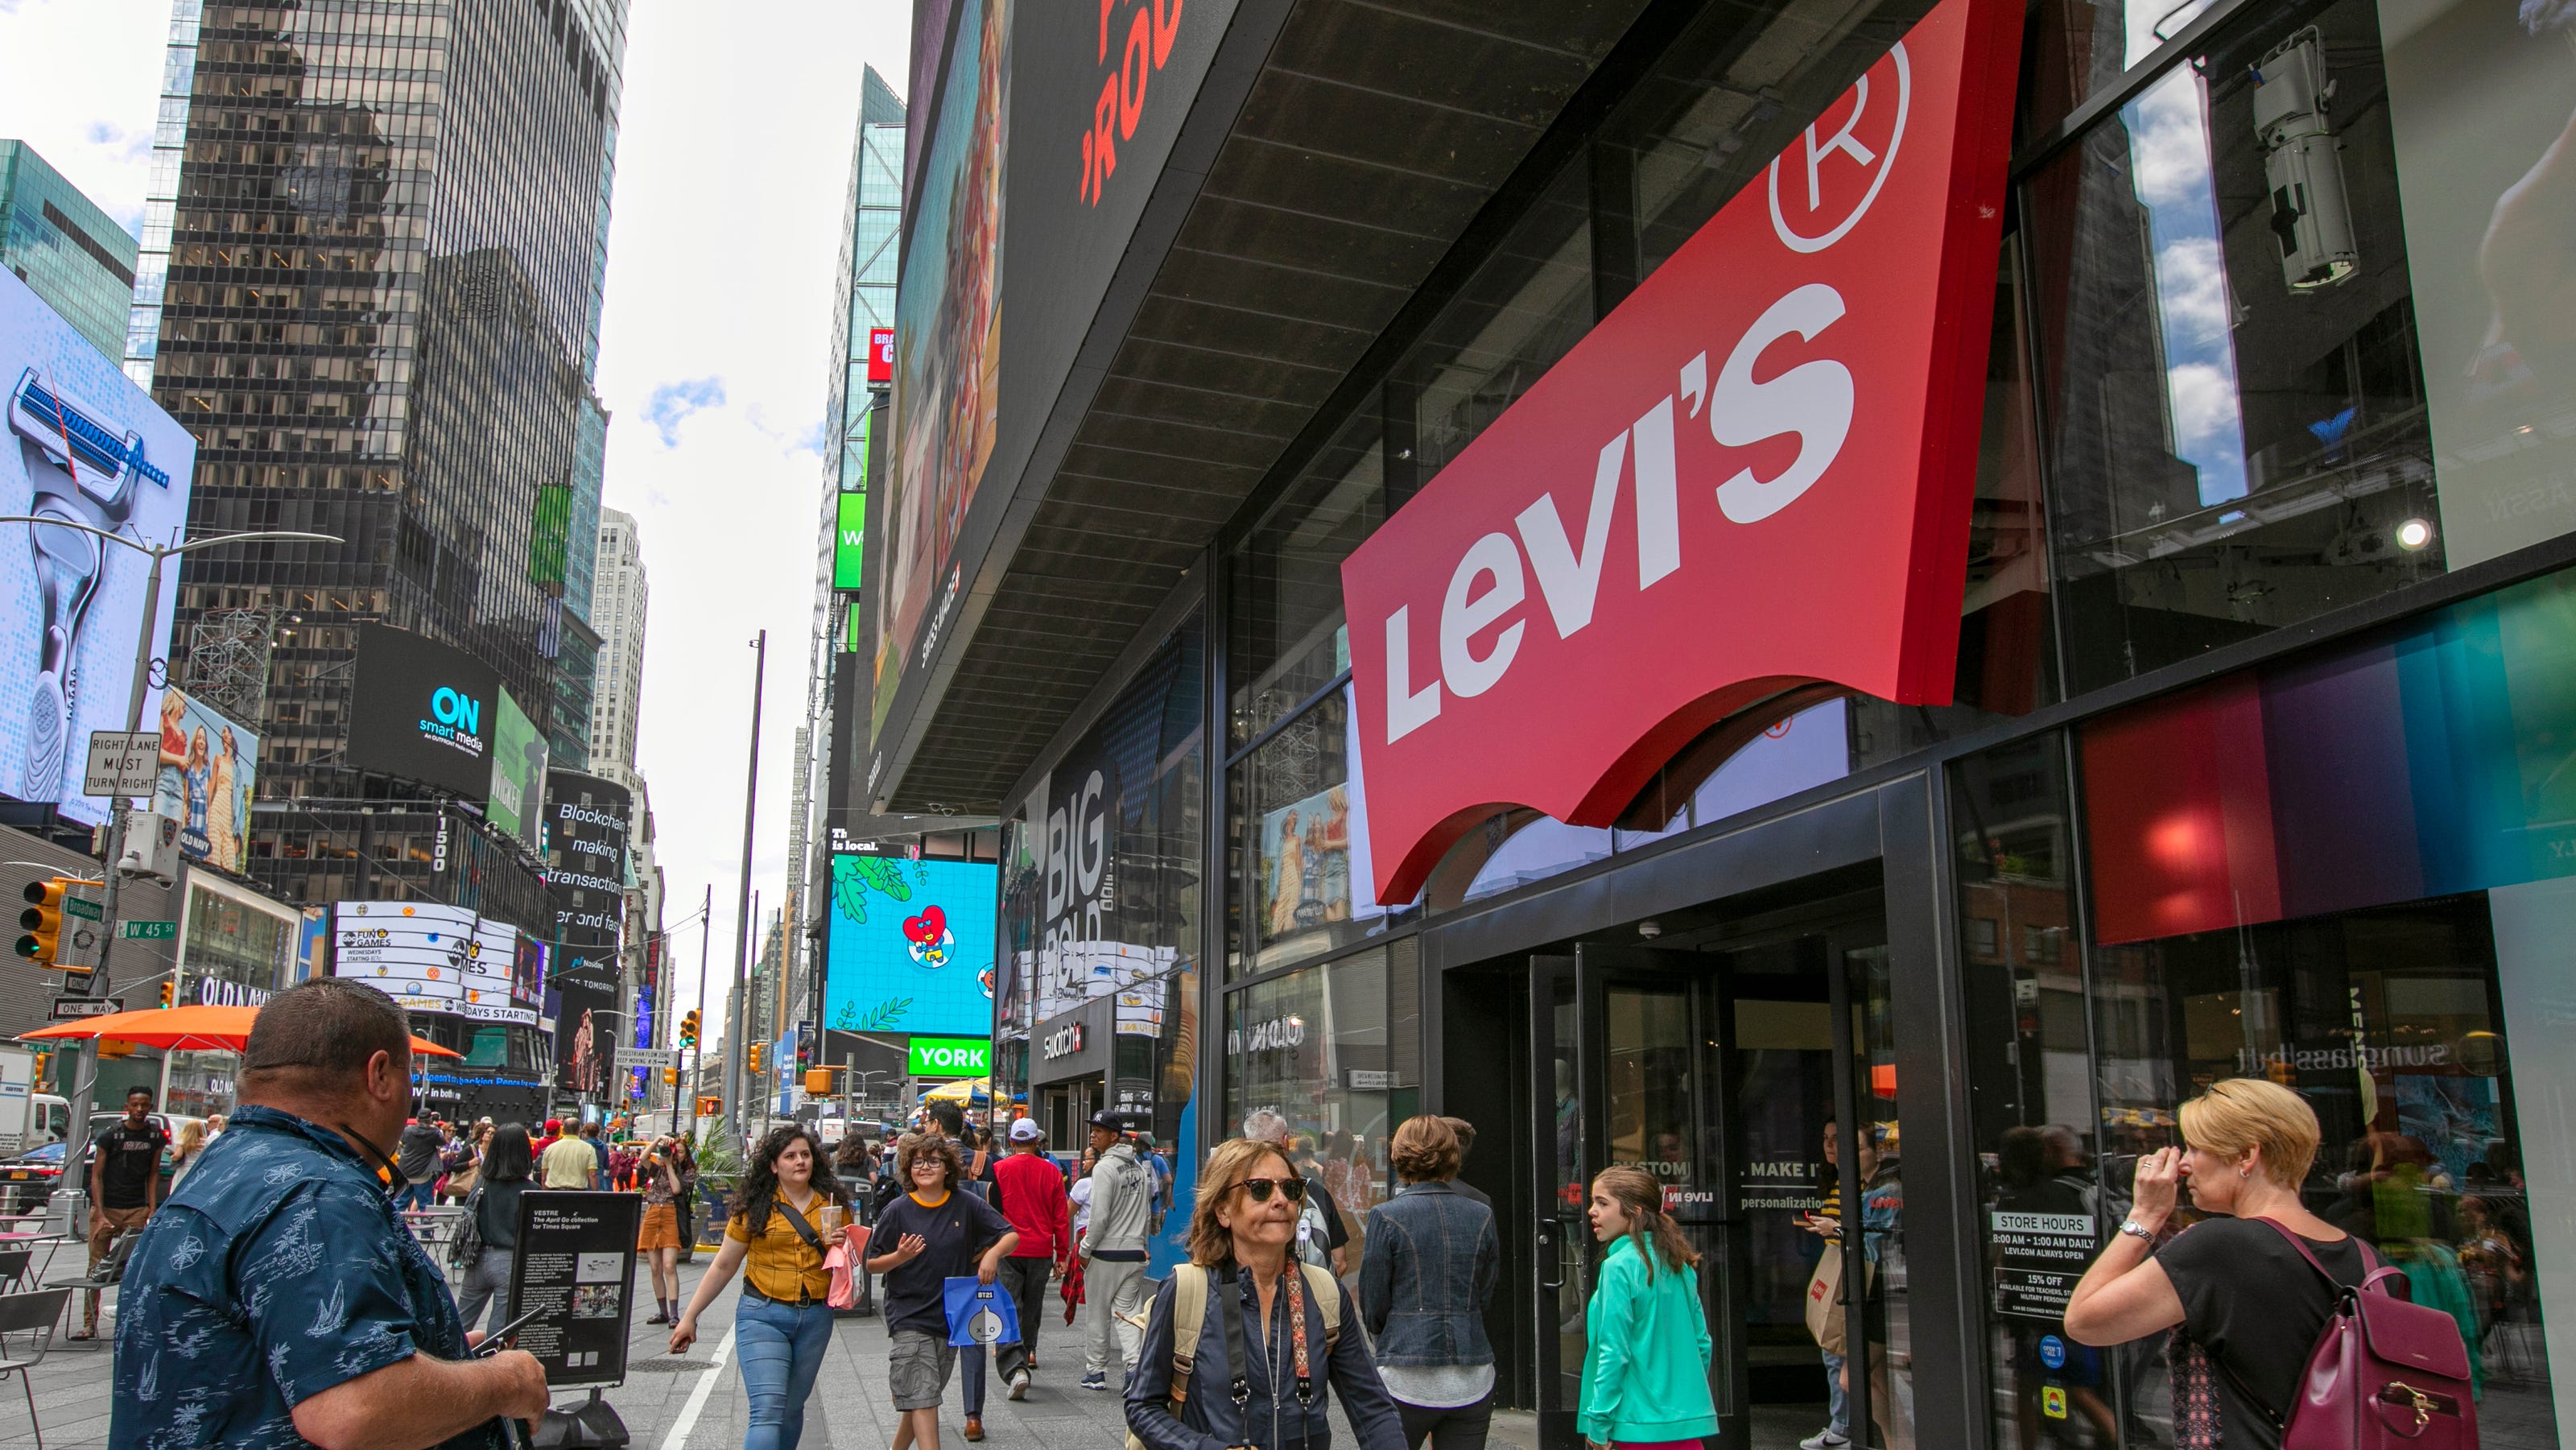 Levi's job cuts: Jeans maker cutting 700 office jobs